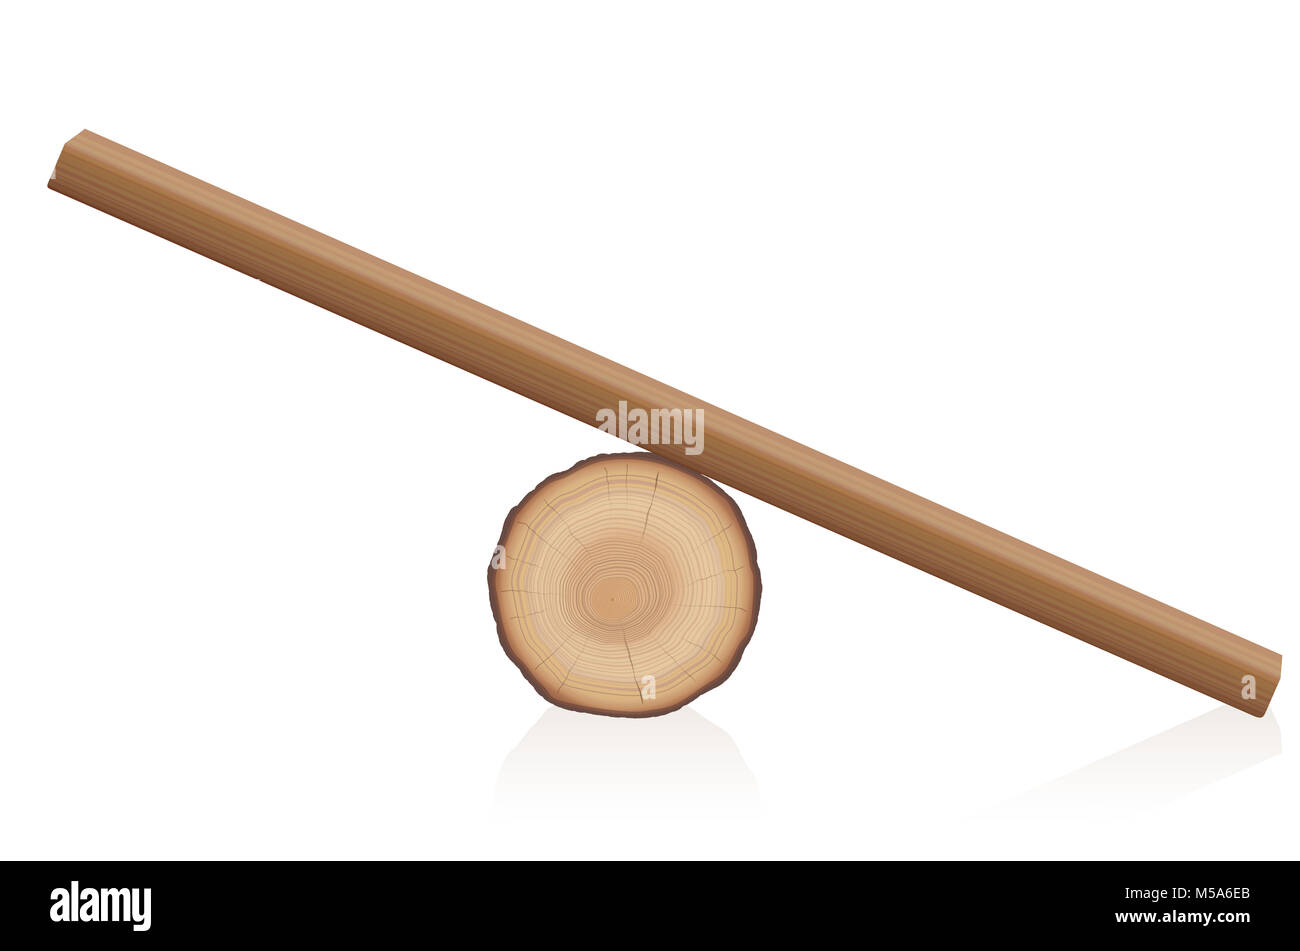 Holz- balance Spielzeug. Einfache rustikale Wippe aus einem liegenden Baumstamm und ein holzbrett-isolierte Vector Illustration auf weißem Hintergrund. Stockfoto